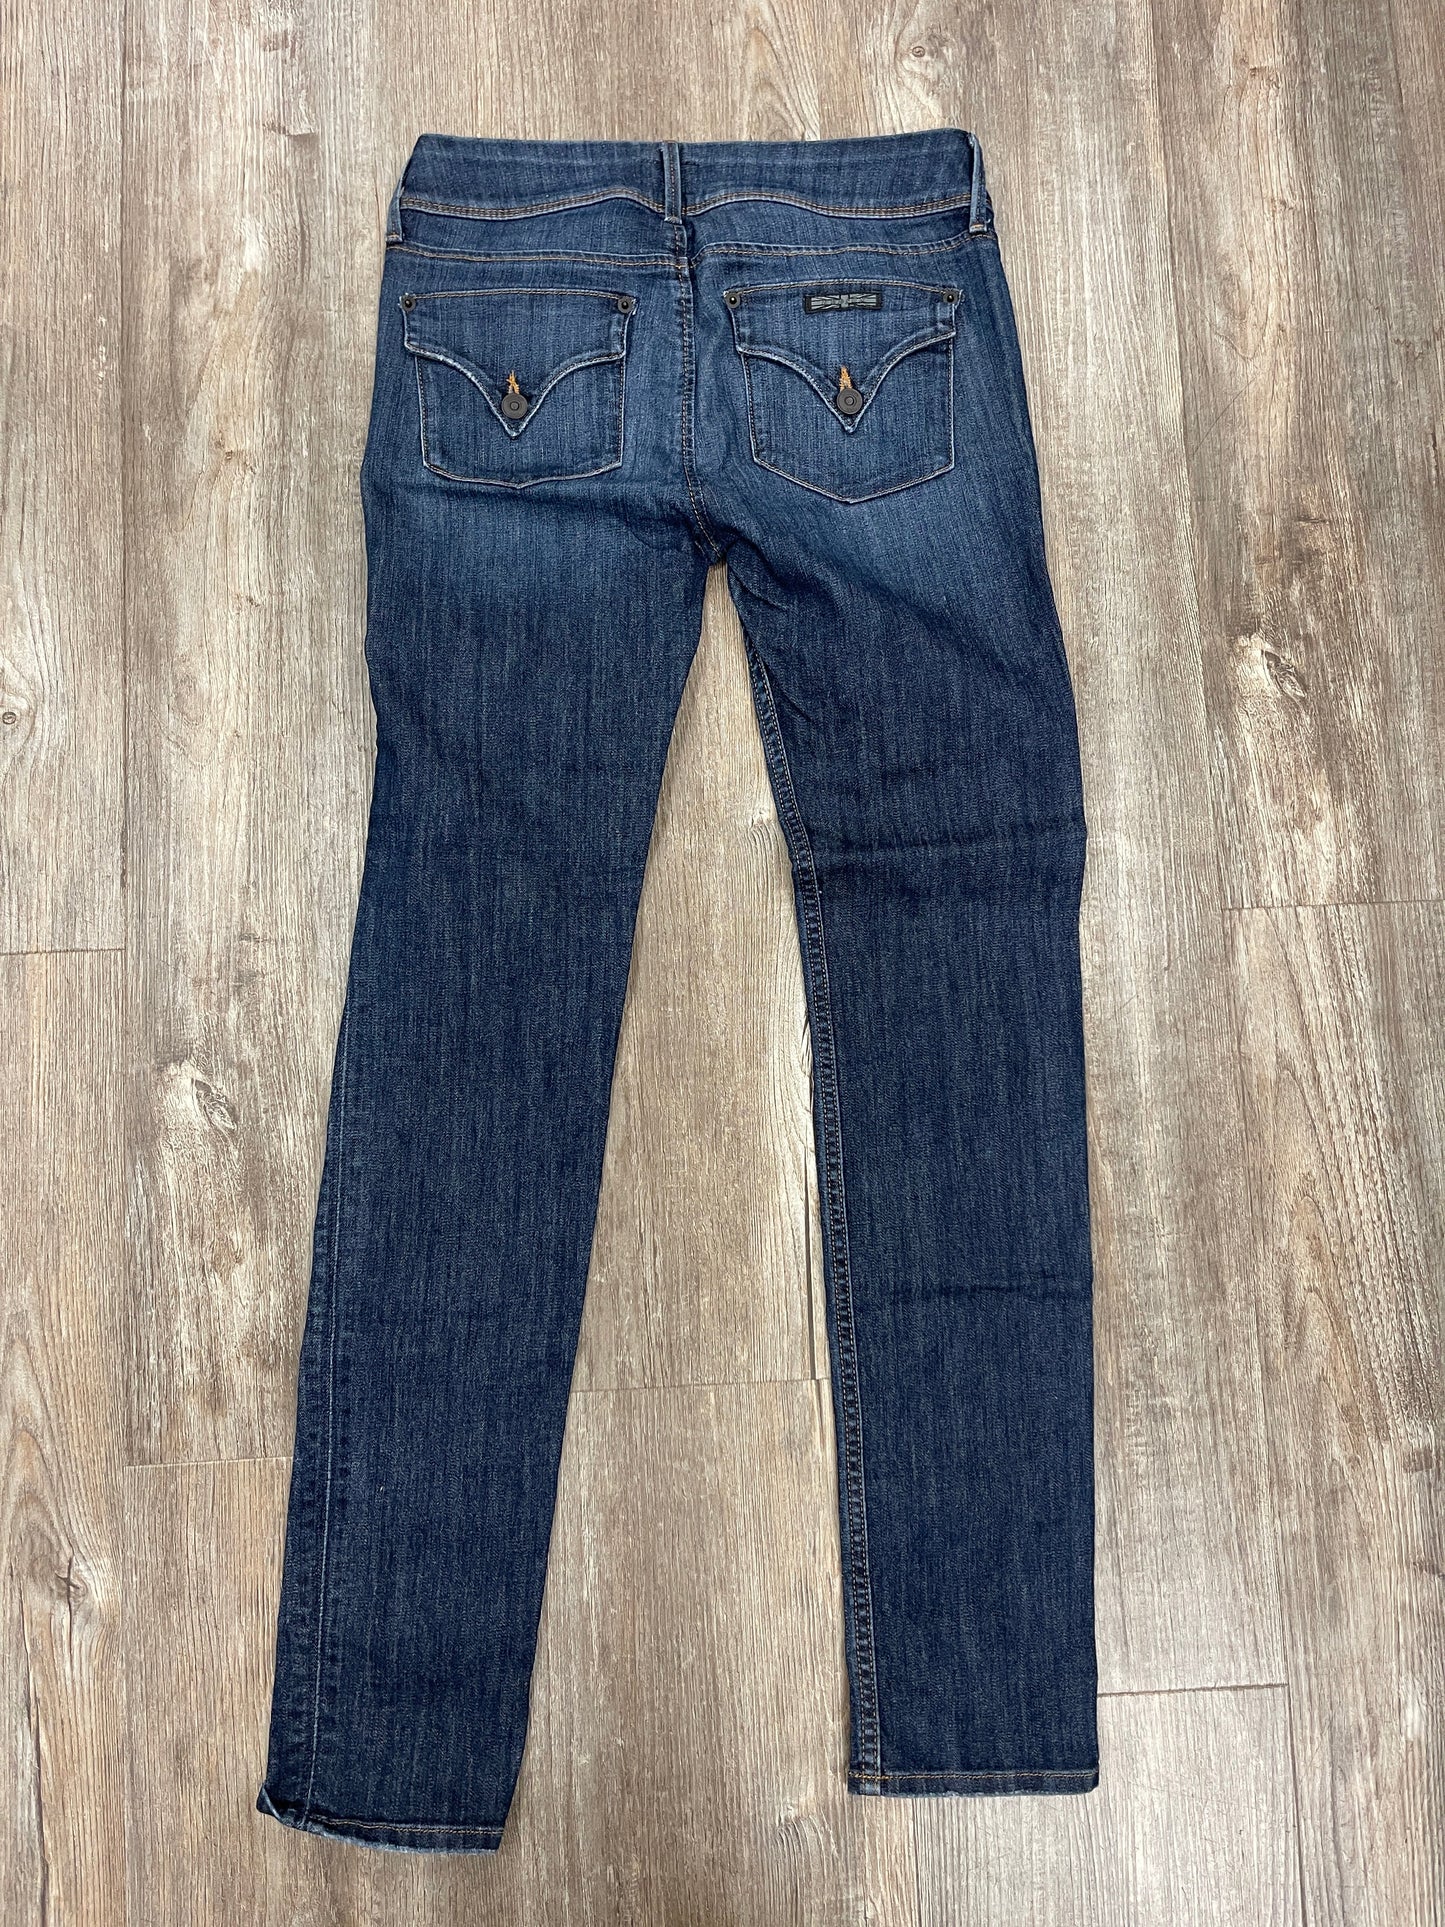 Jeans Designer By Hudson  Size: 4